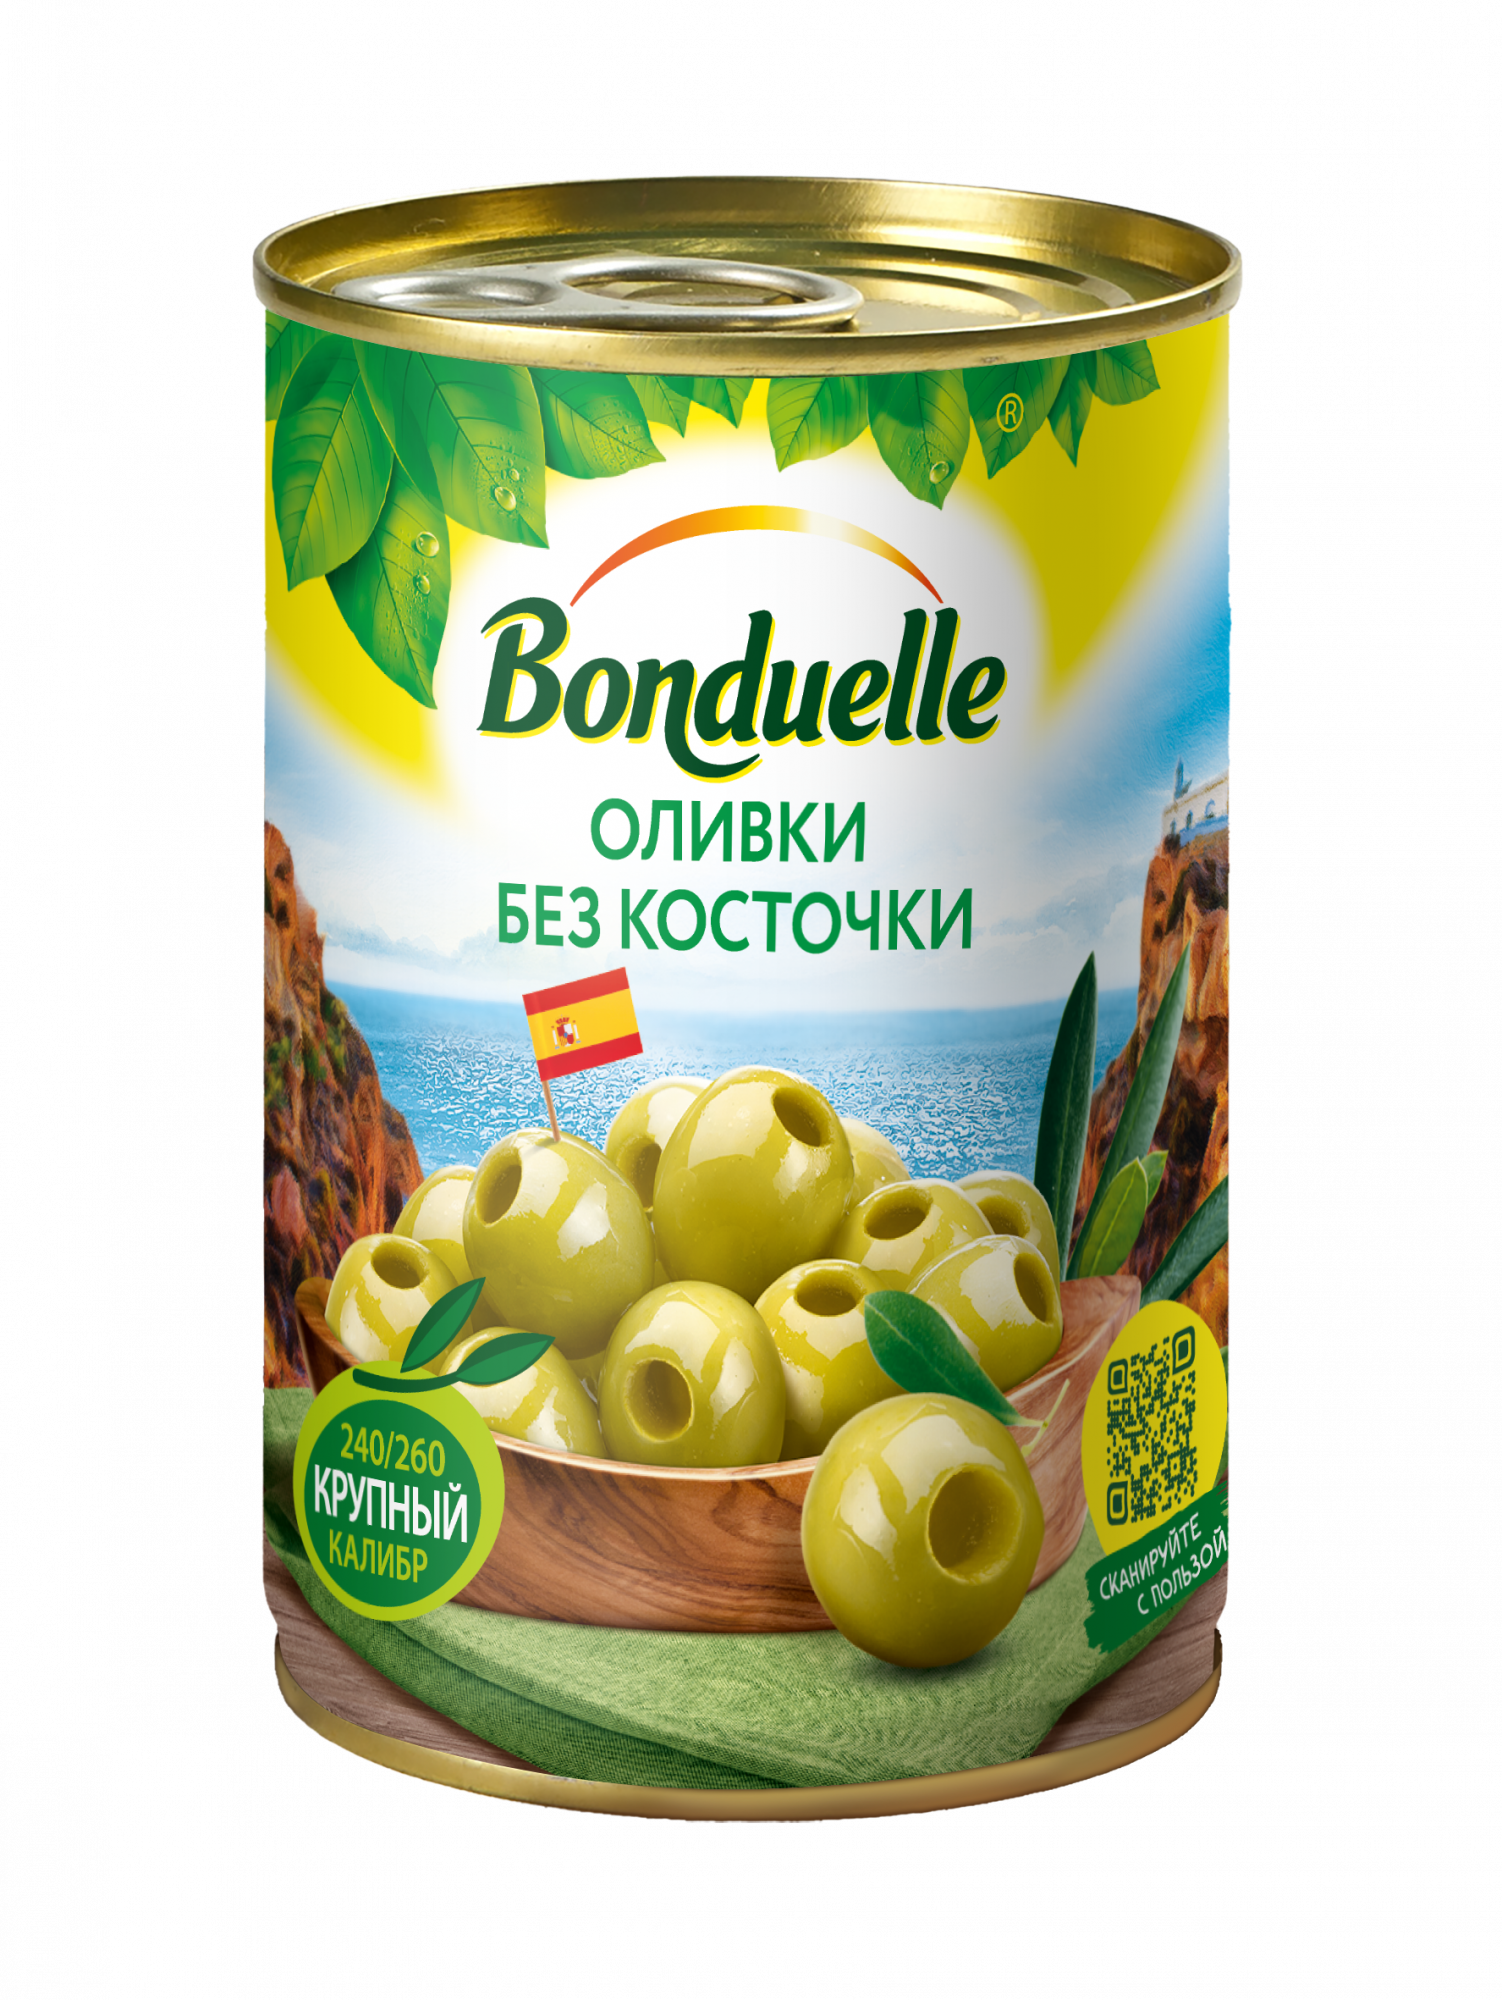 Купить оливки Bonduelle зеленые без косточки 300 г, цены на Мегамаркет | Артикул: 100023621406